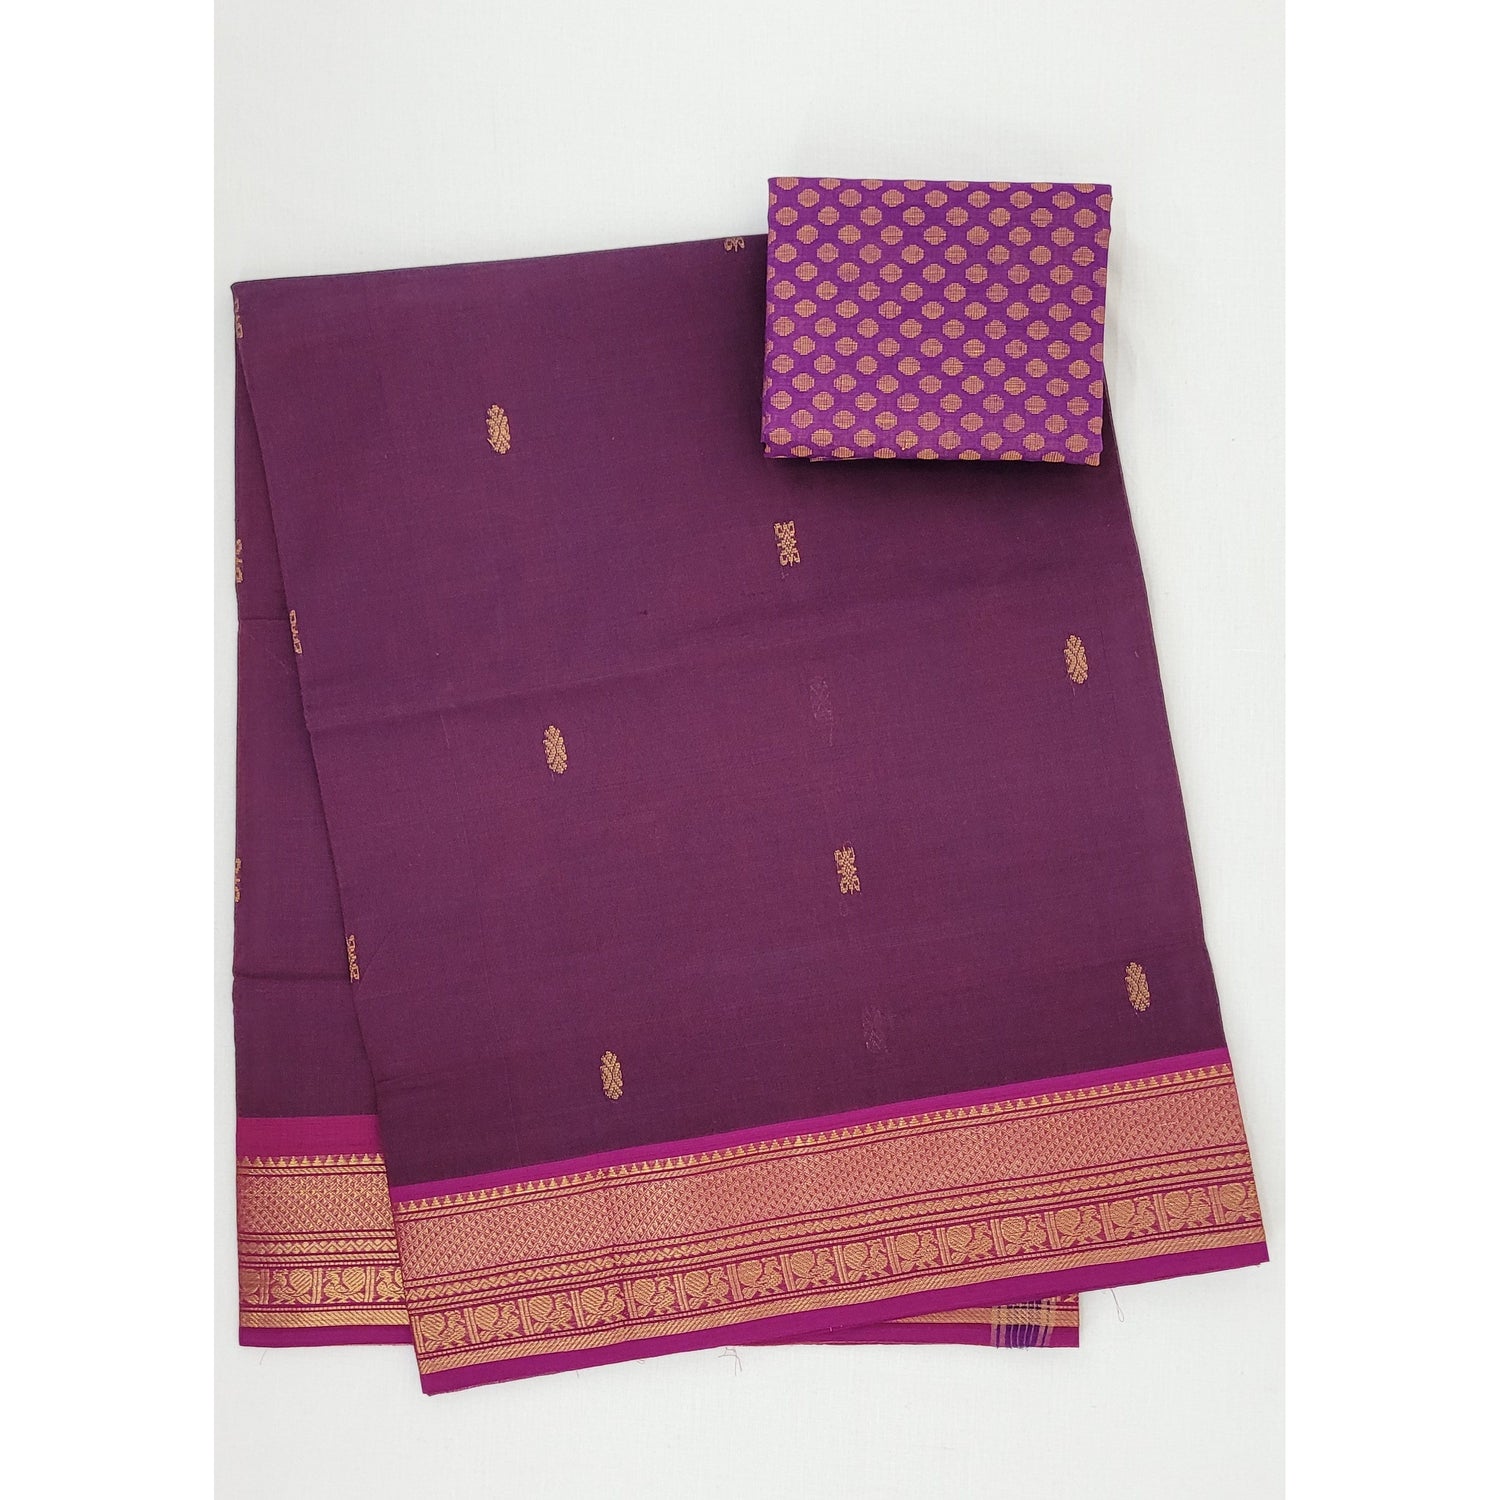 Falsa Color Venkatagiri Handloom Cotton Saree - Vinshika